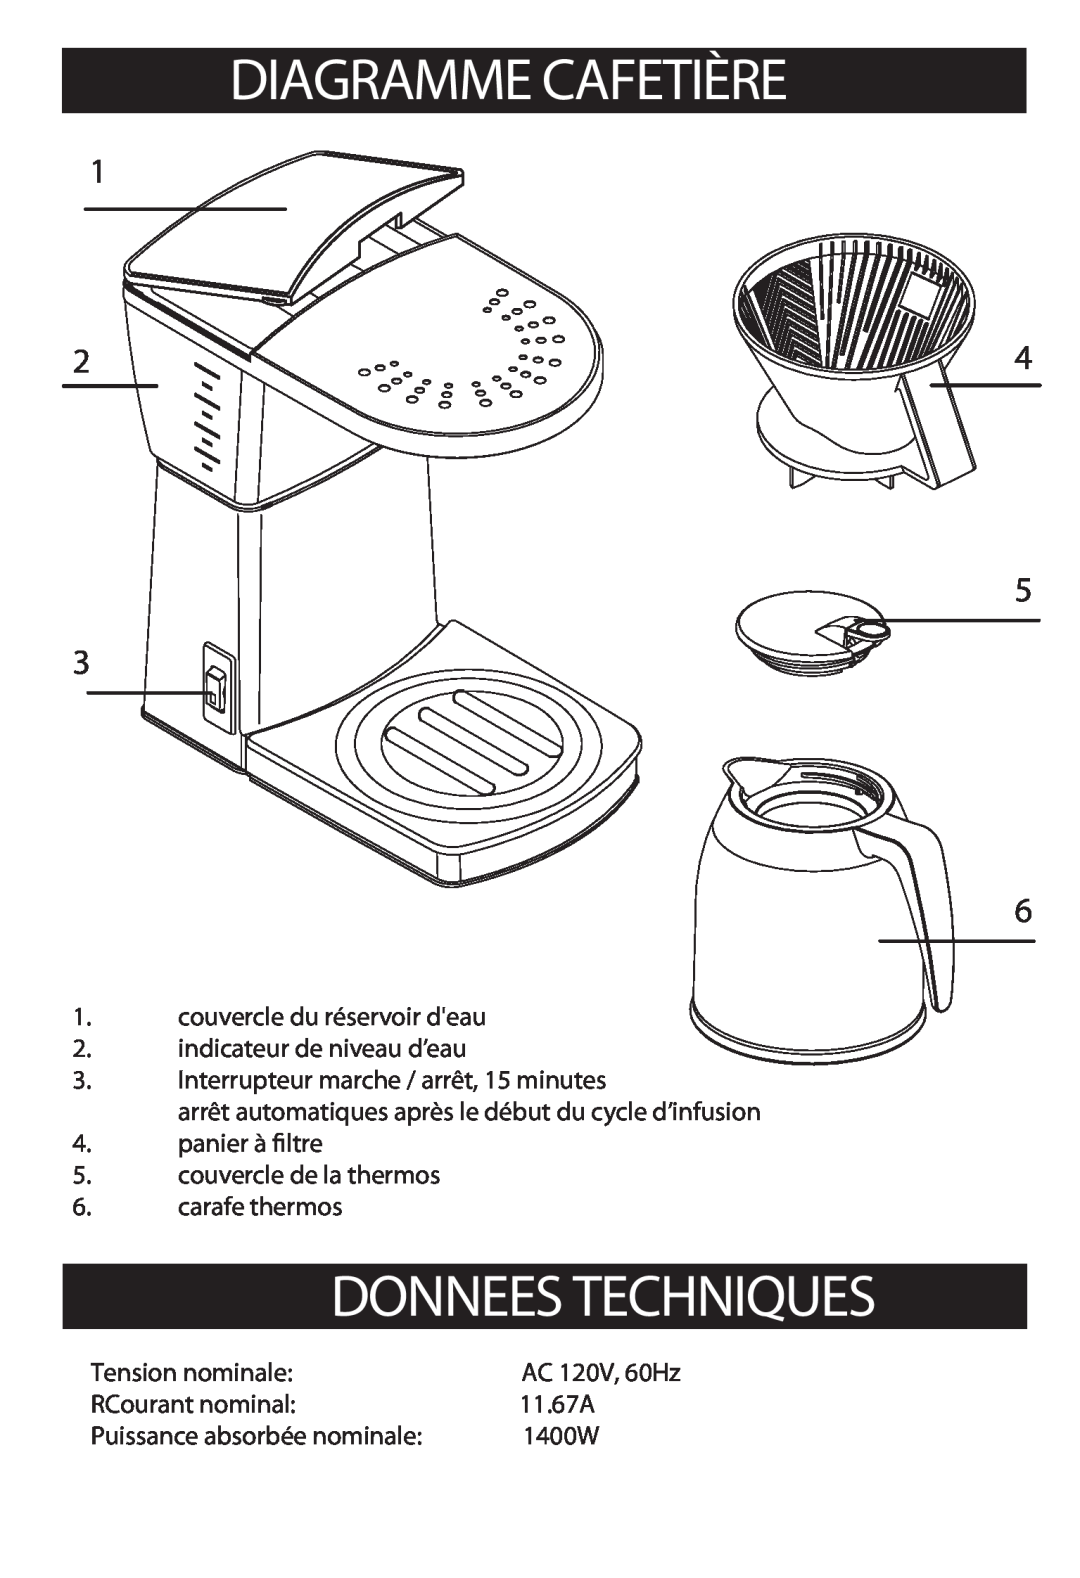 Bonavita BV1800TH warranty Diagramme Cafetière, Donnees Techniques 